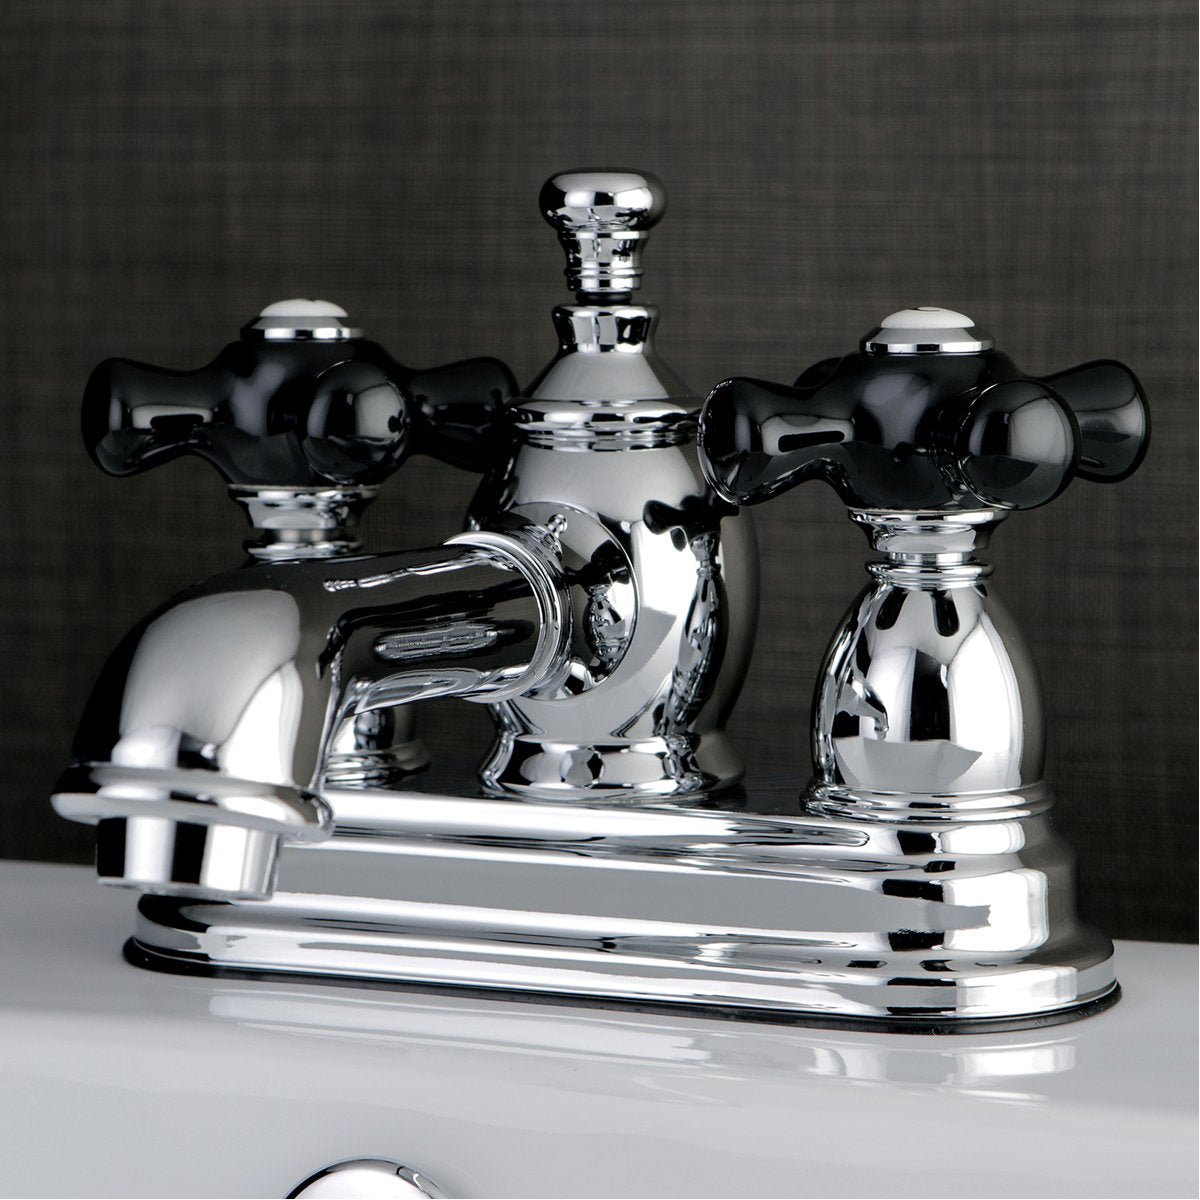 Kingston Brass Duchess 4-Inch Centerset Deck Mount 3-Hole Bathroom Faucet